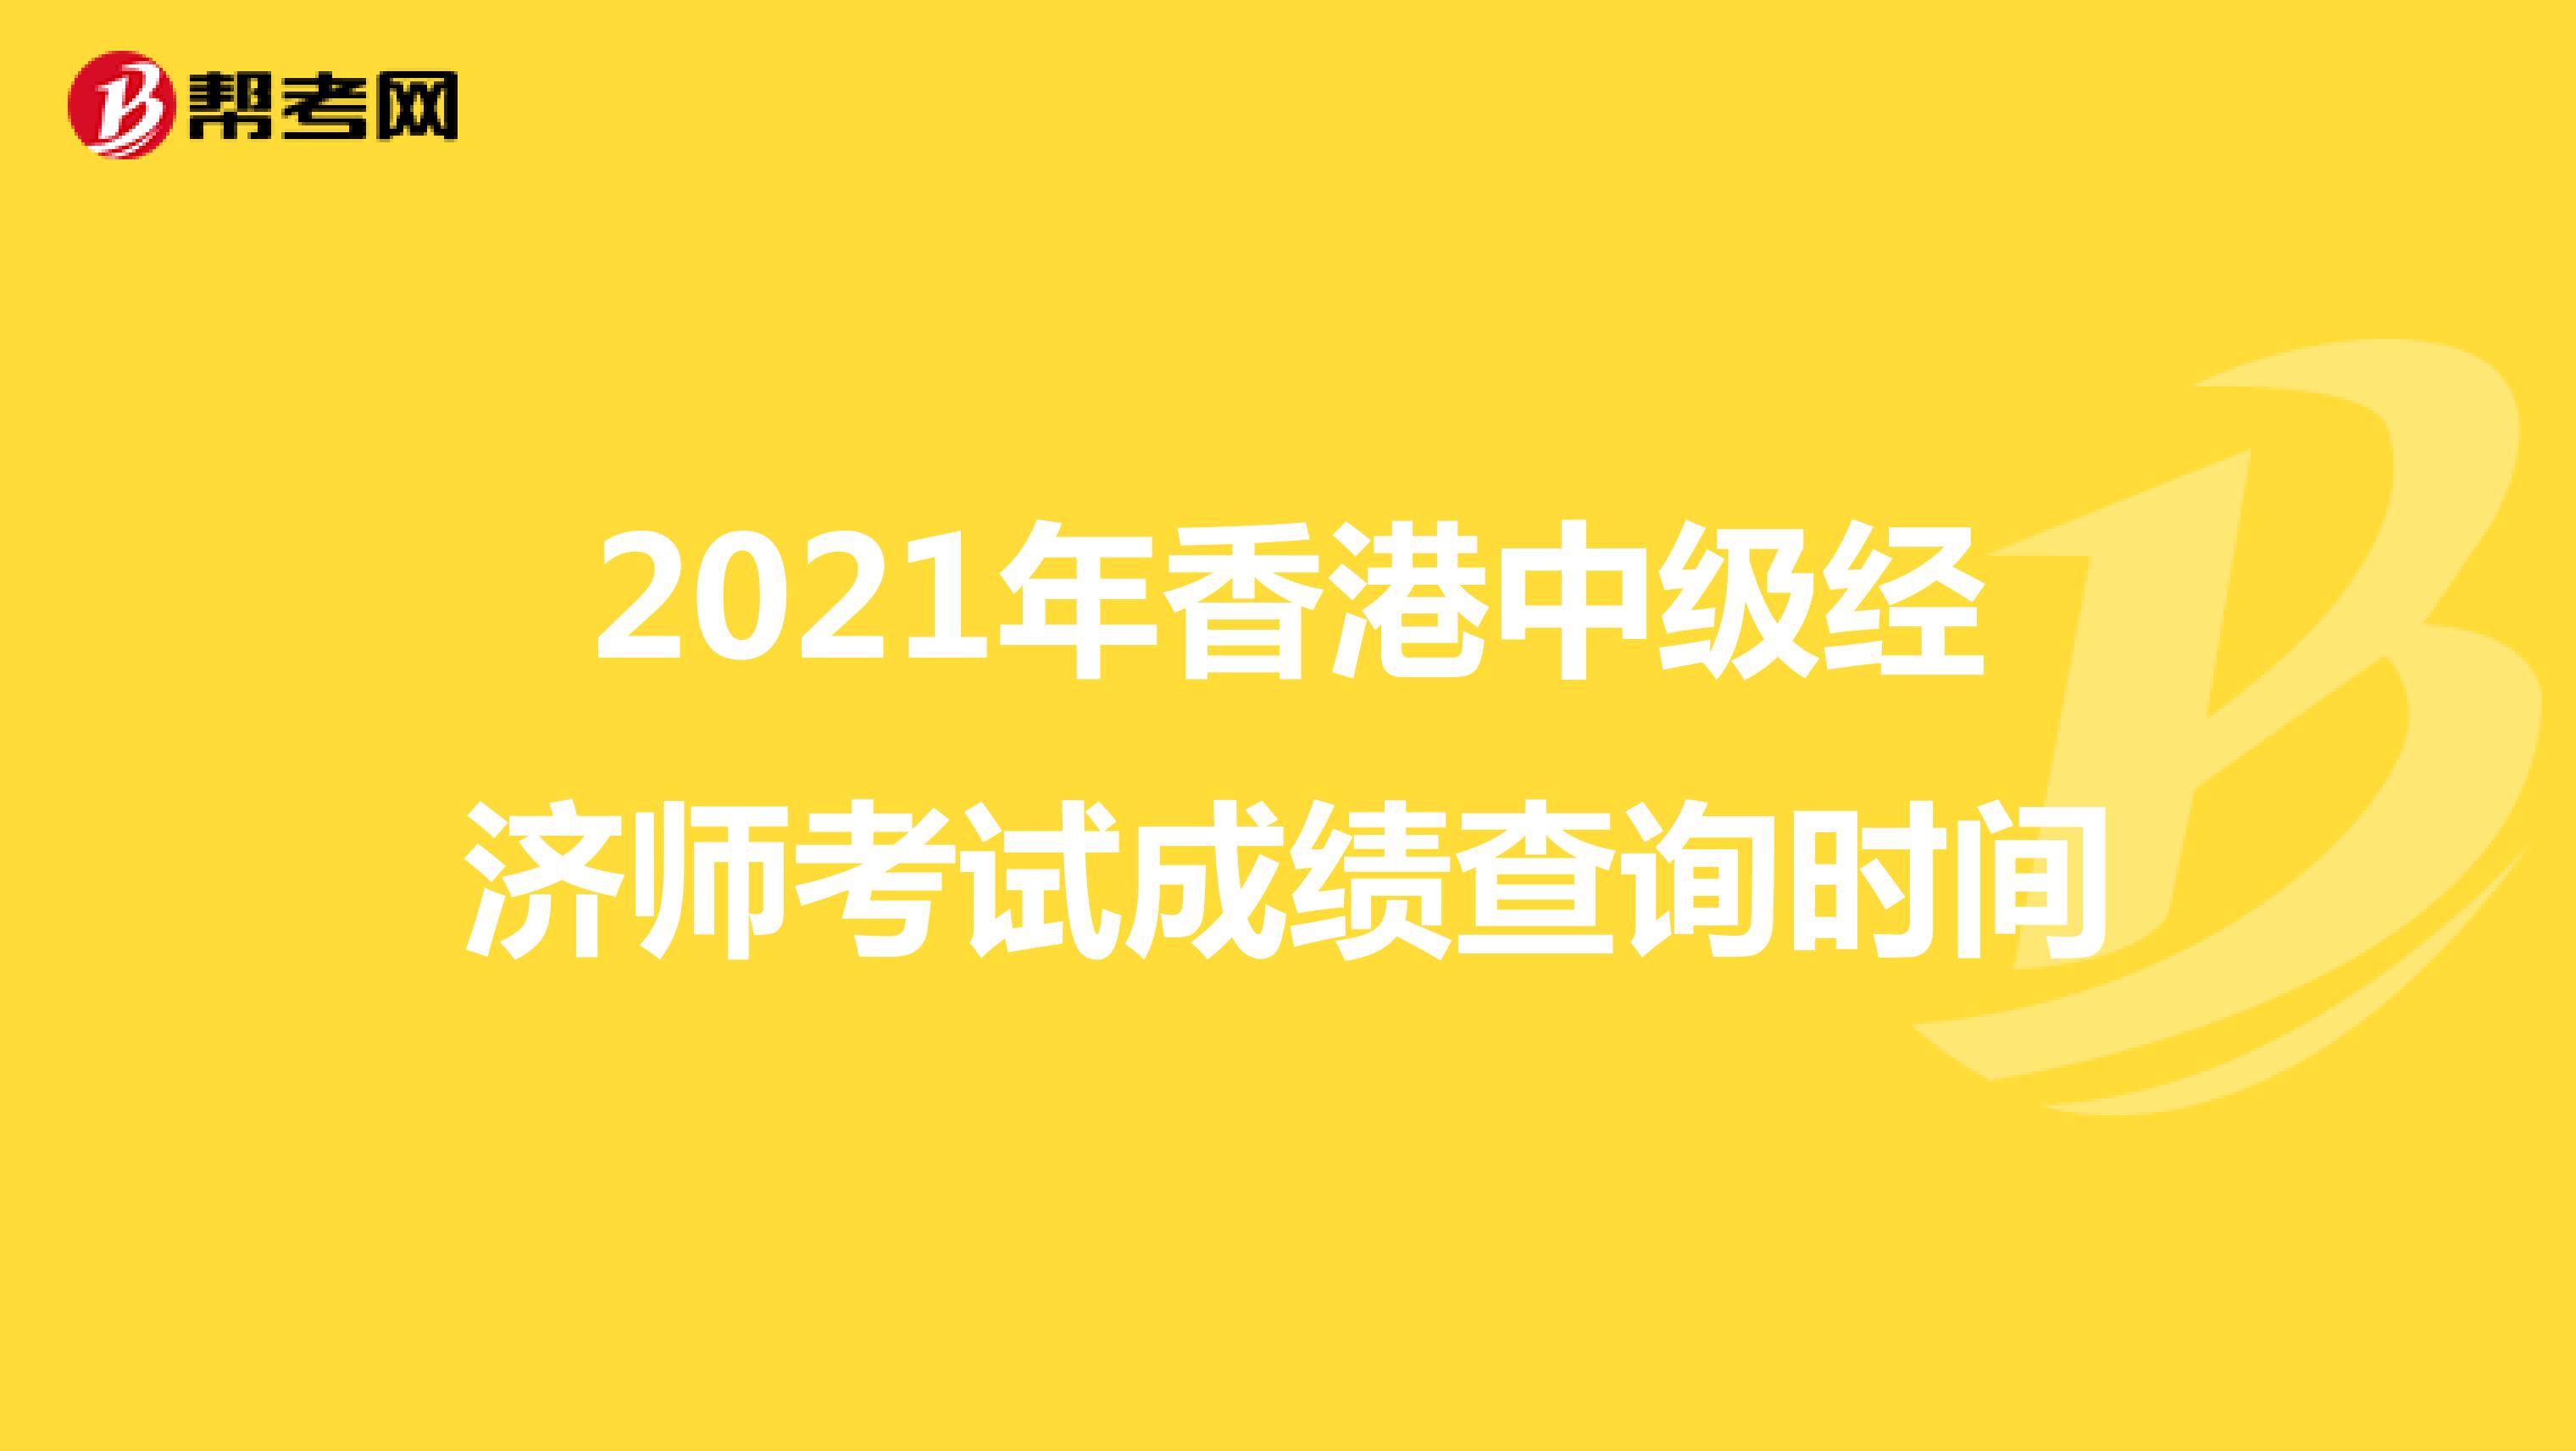 2021年香港中级经济师考试成绩查询时间